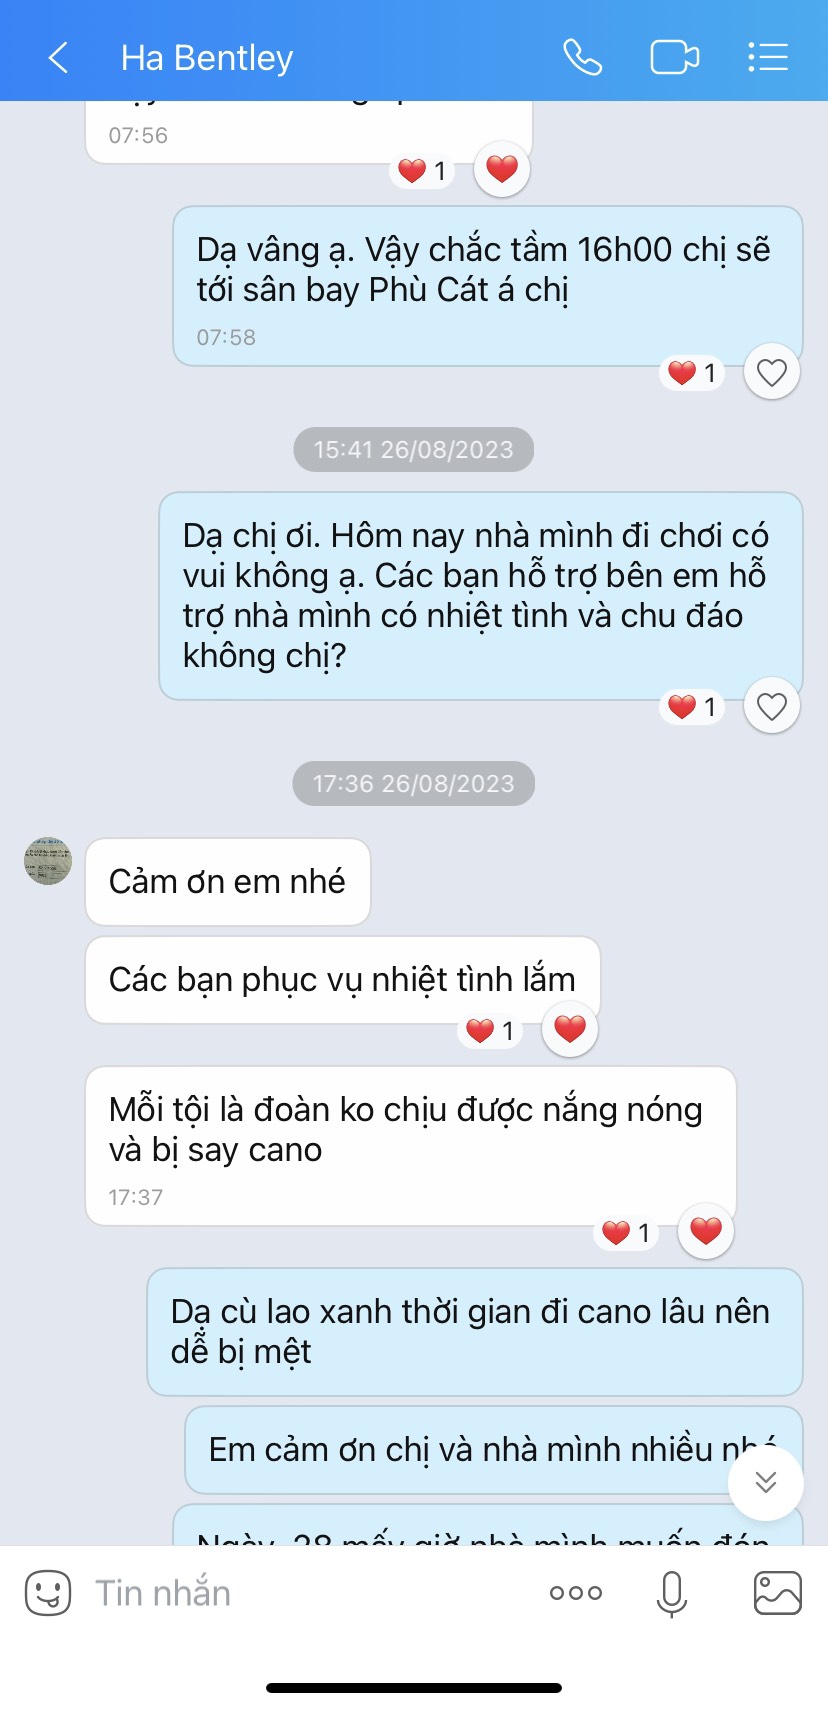 Tour Quảng Ninh – Quy Nhơn 4 Ngày 3 Đêm (0944107174)